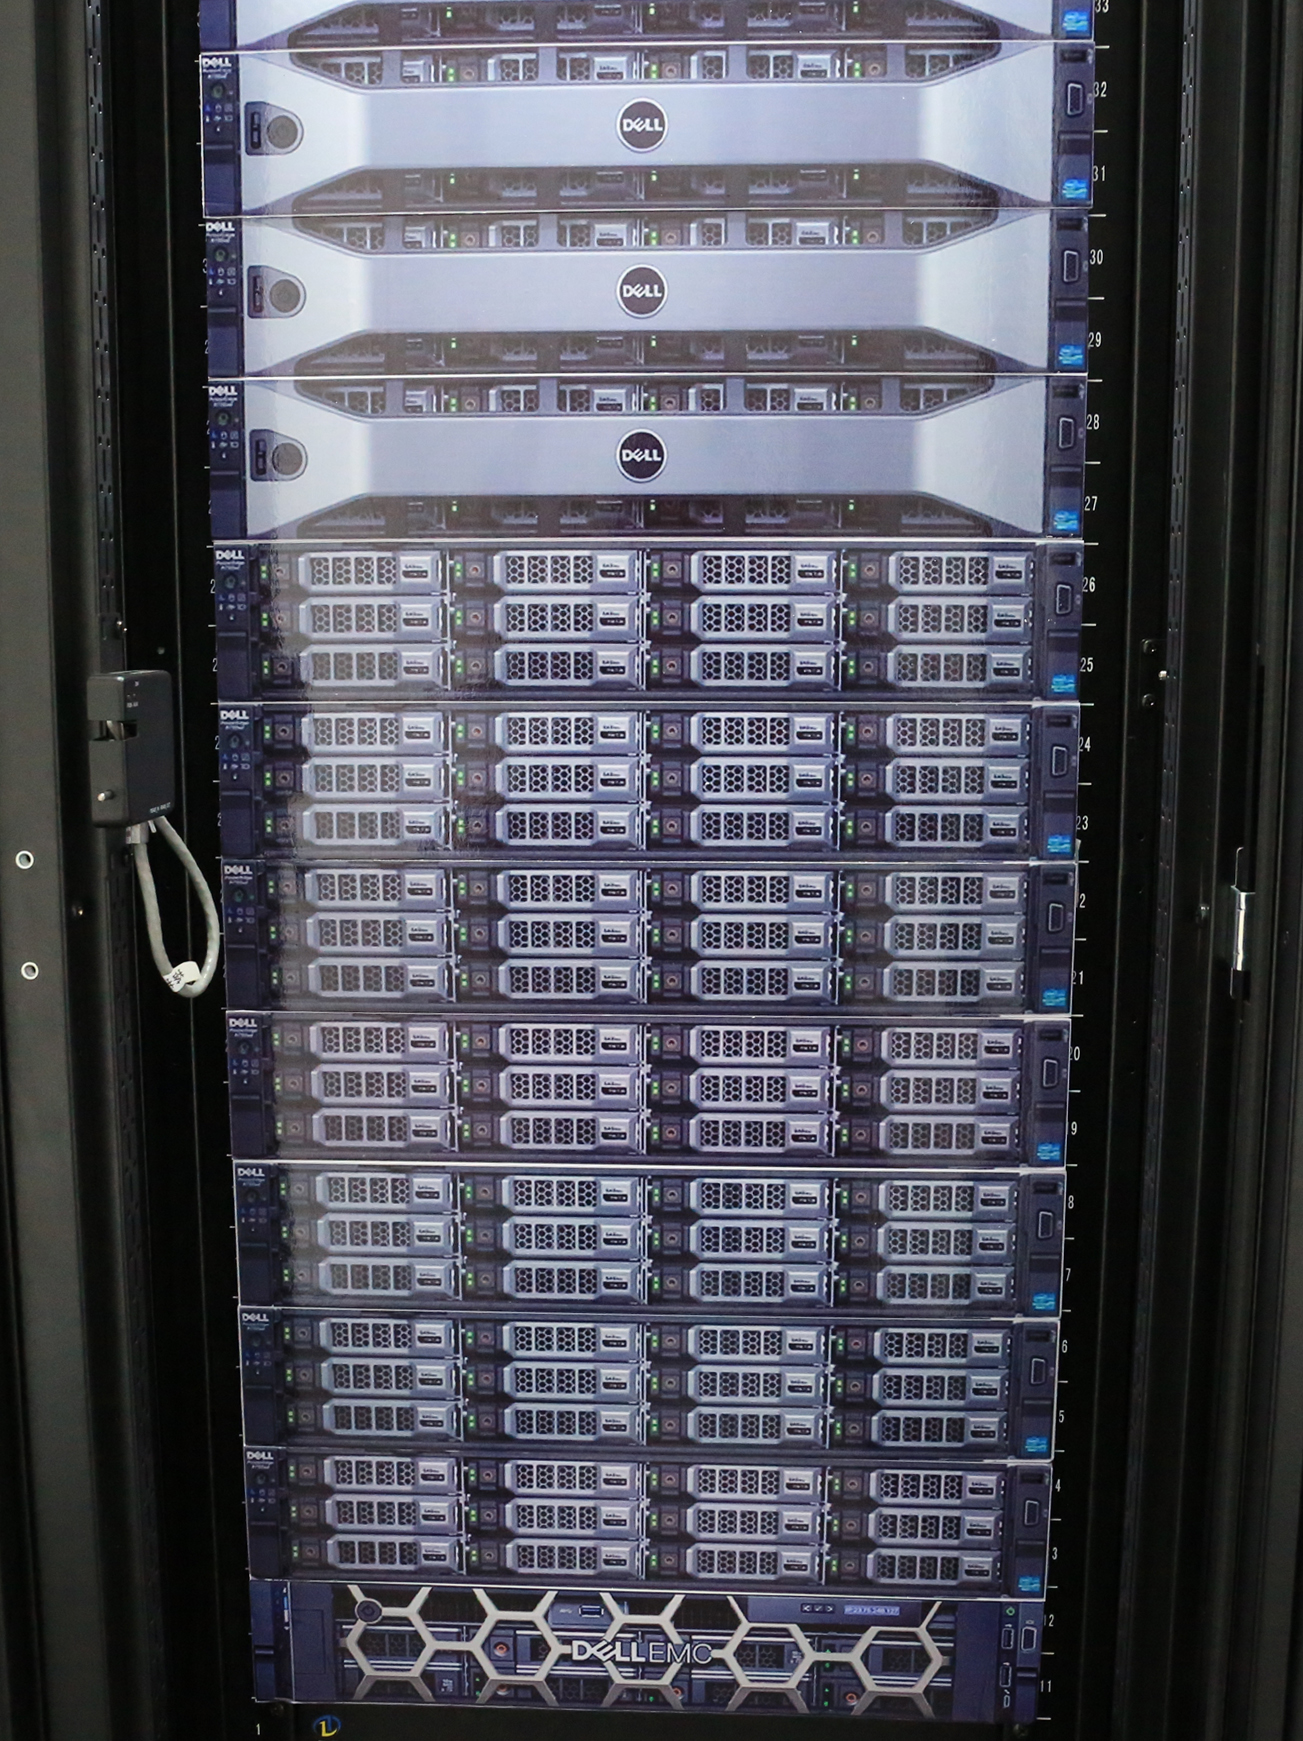 Cooling System Server Cabinet Modular Data Center Solutions Smart Server Rack Cabinets, Data Rack